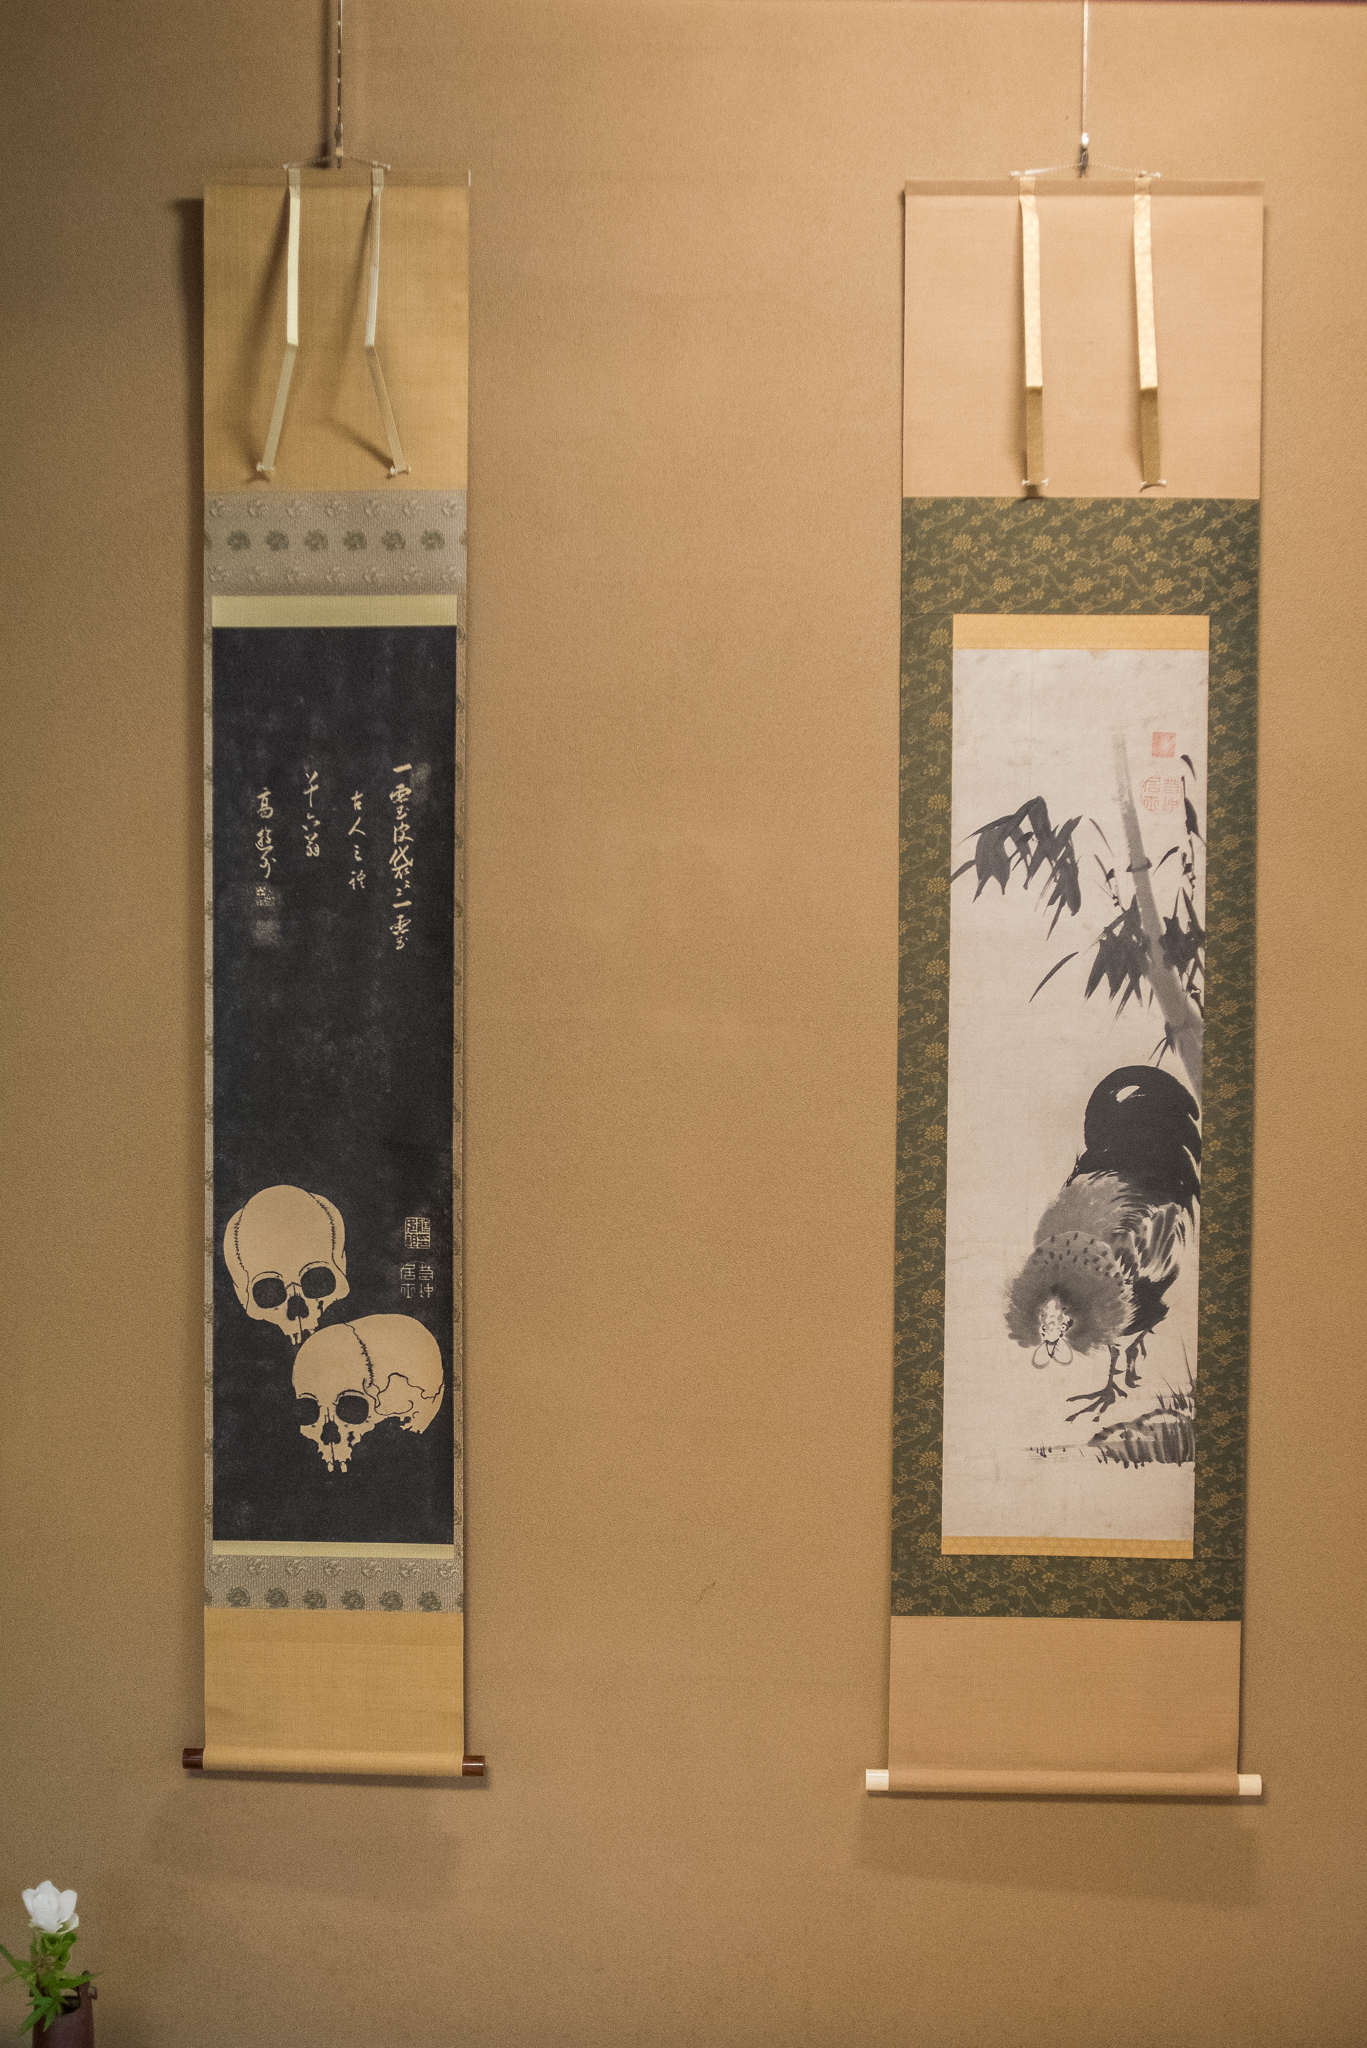 左から「髑髏図」「竹に雄鶏図」。「竹に雄鶏図」が本物とわかり「喜びもひとしおだった」と小島住職